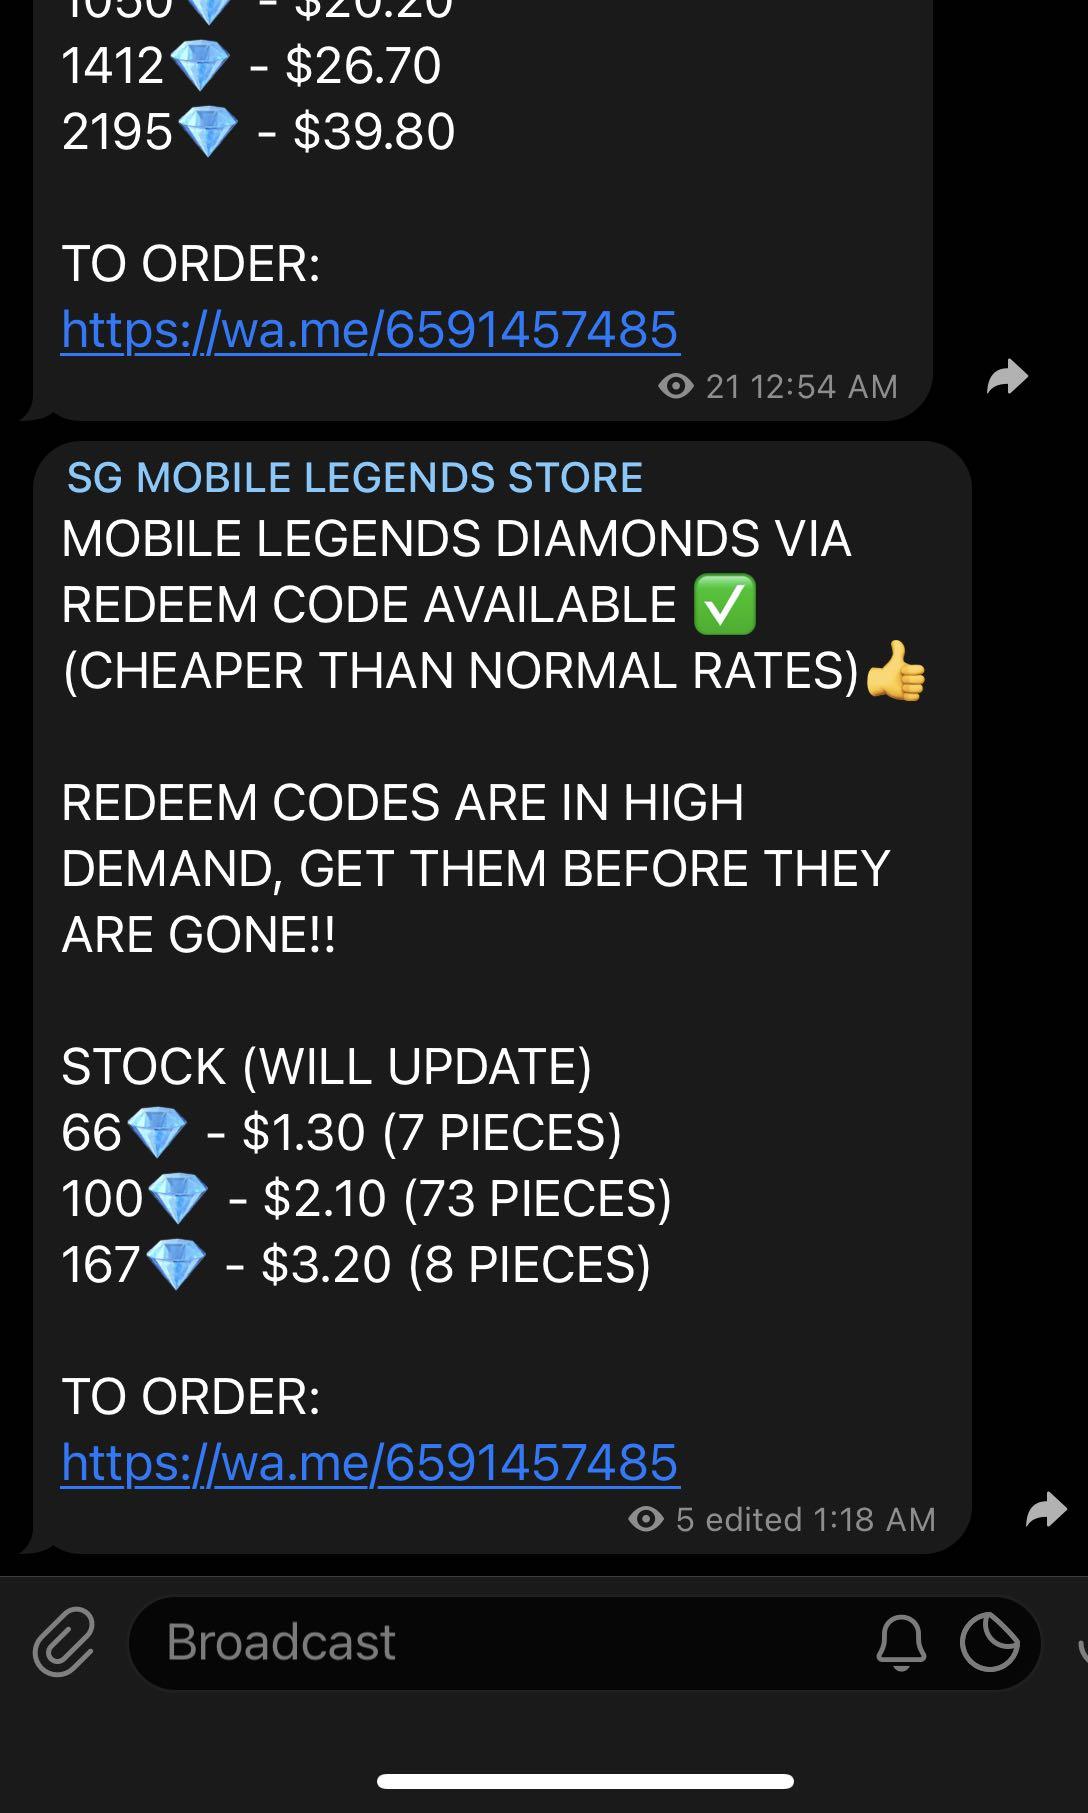 Mobile legend code redeem Discover redeem